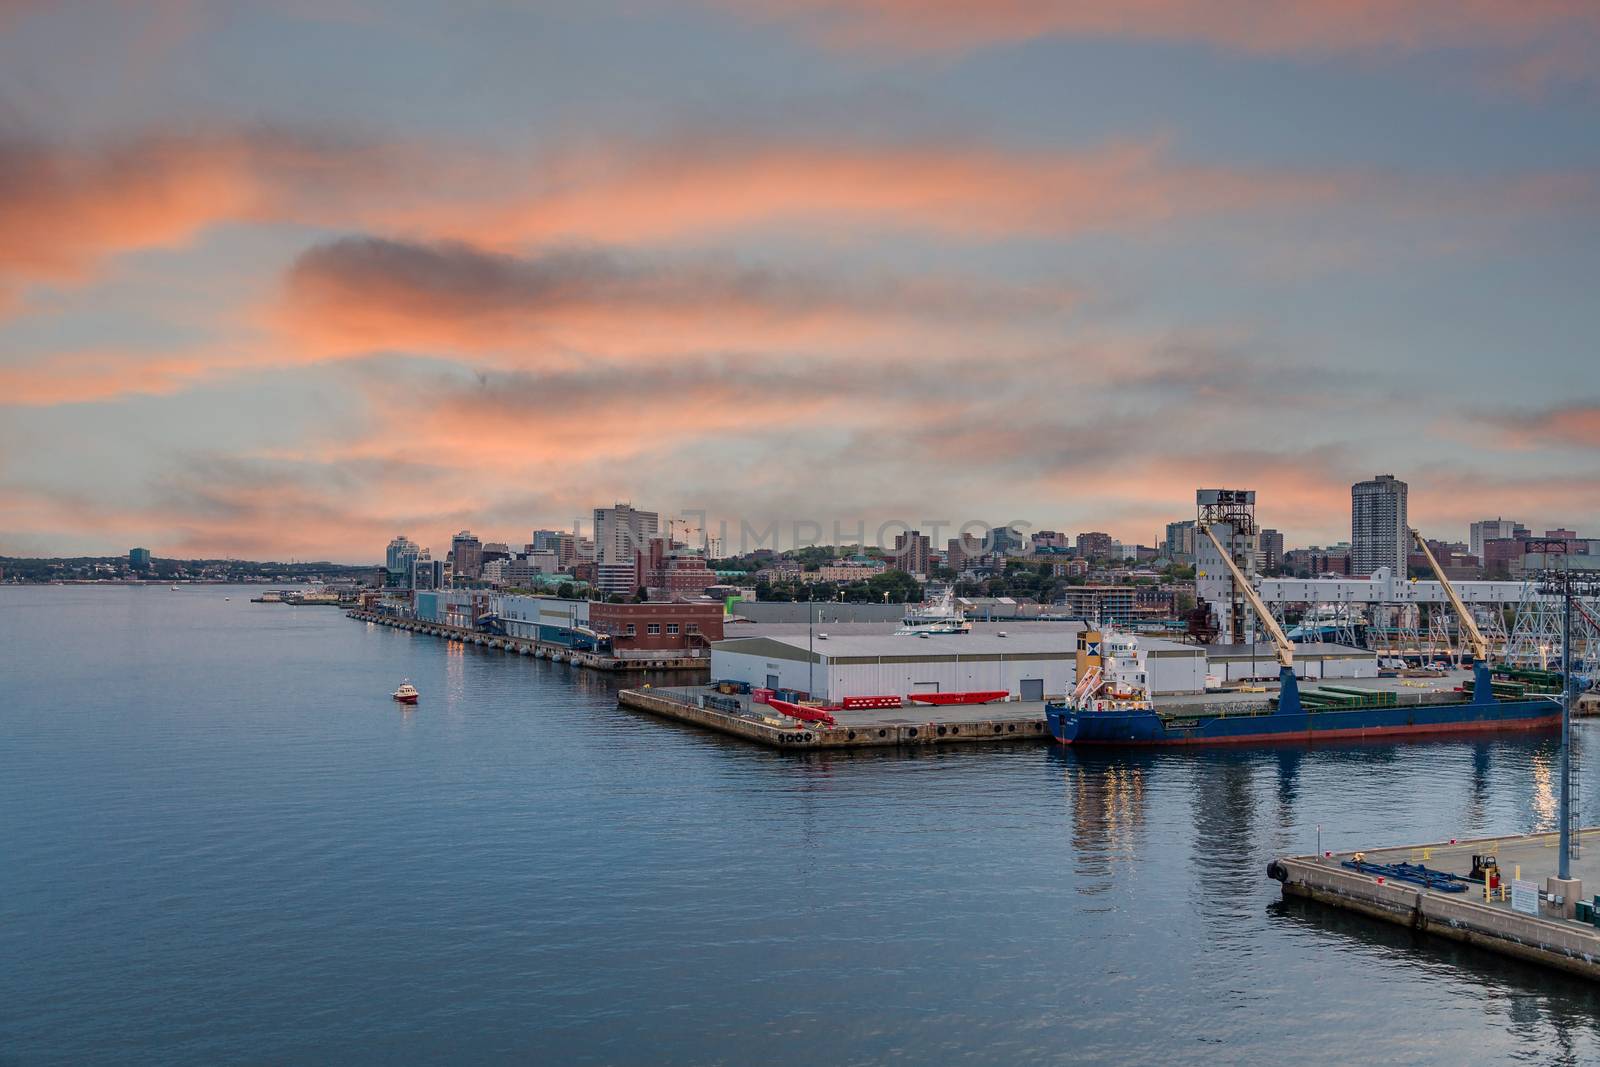 Halifax Harbour at Dusk by dbvirago